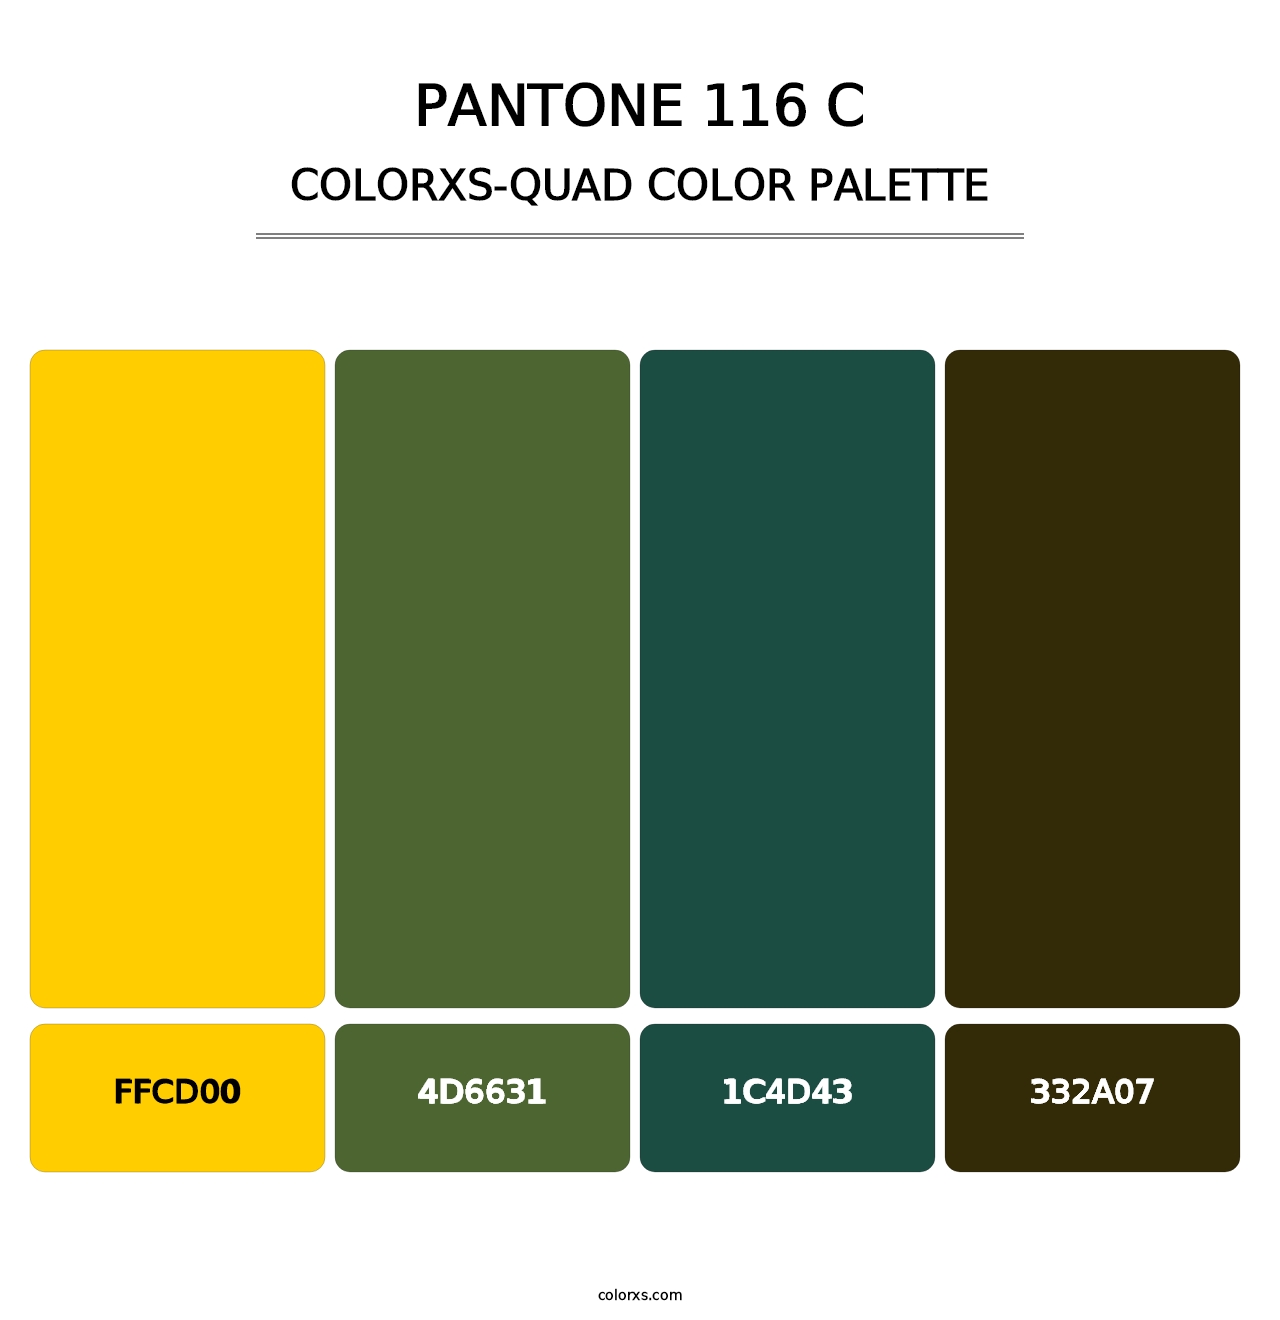 PANTONE 116 C - Colorxs Quad Palette